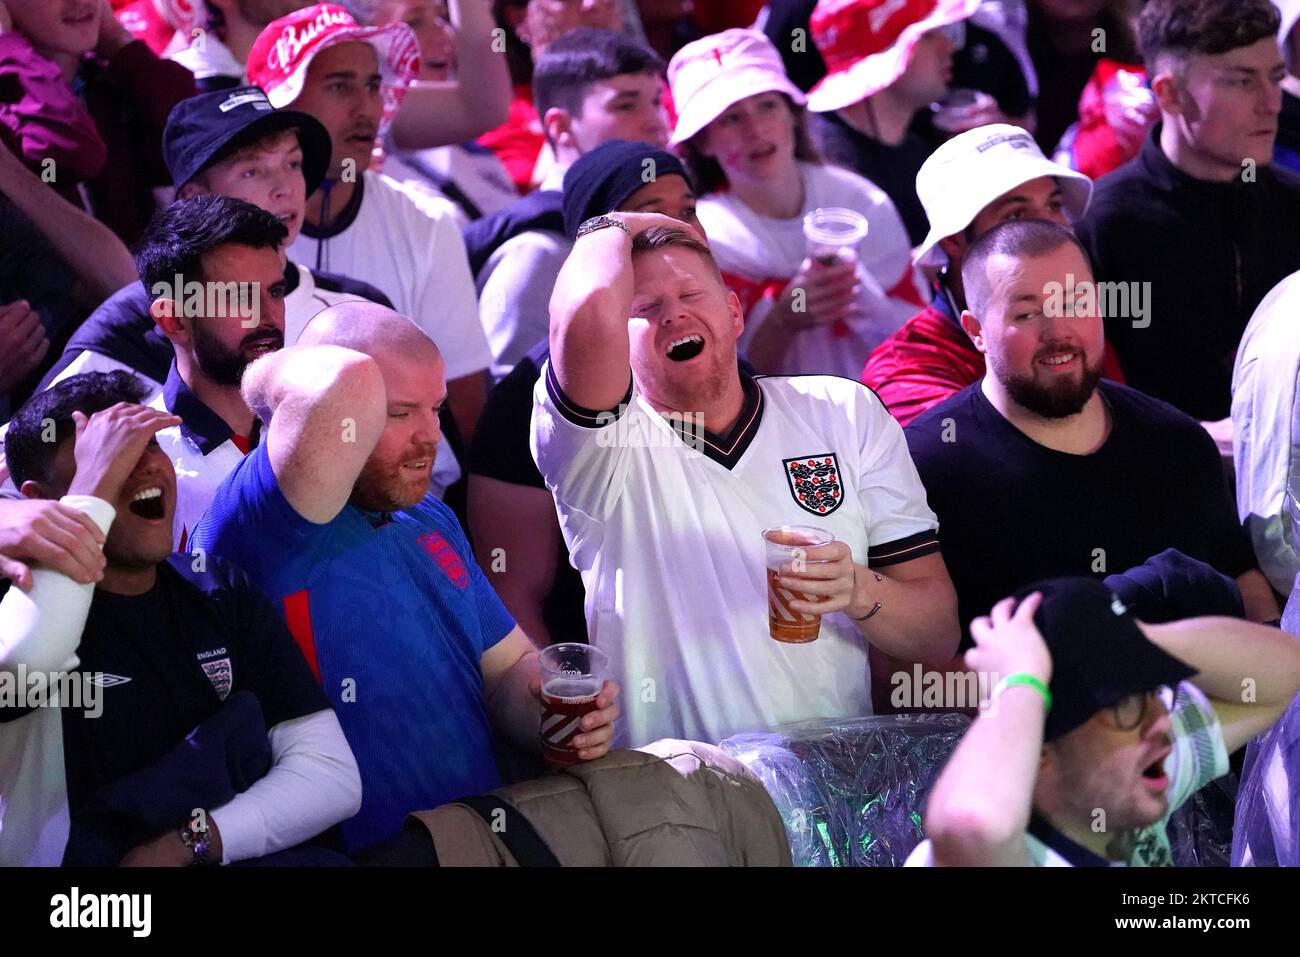 Englische Fans können im BoxPark Croydon während einer Vorführung des FIFA-Weltmeisterschaftsspiels Gruppe B zwischen Wales und England eine Chance verpassen. Foto: Dienstag, 29. November 2022. Stockfoto